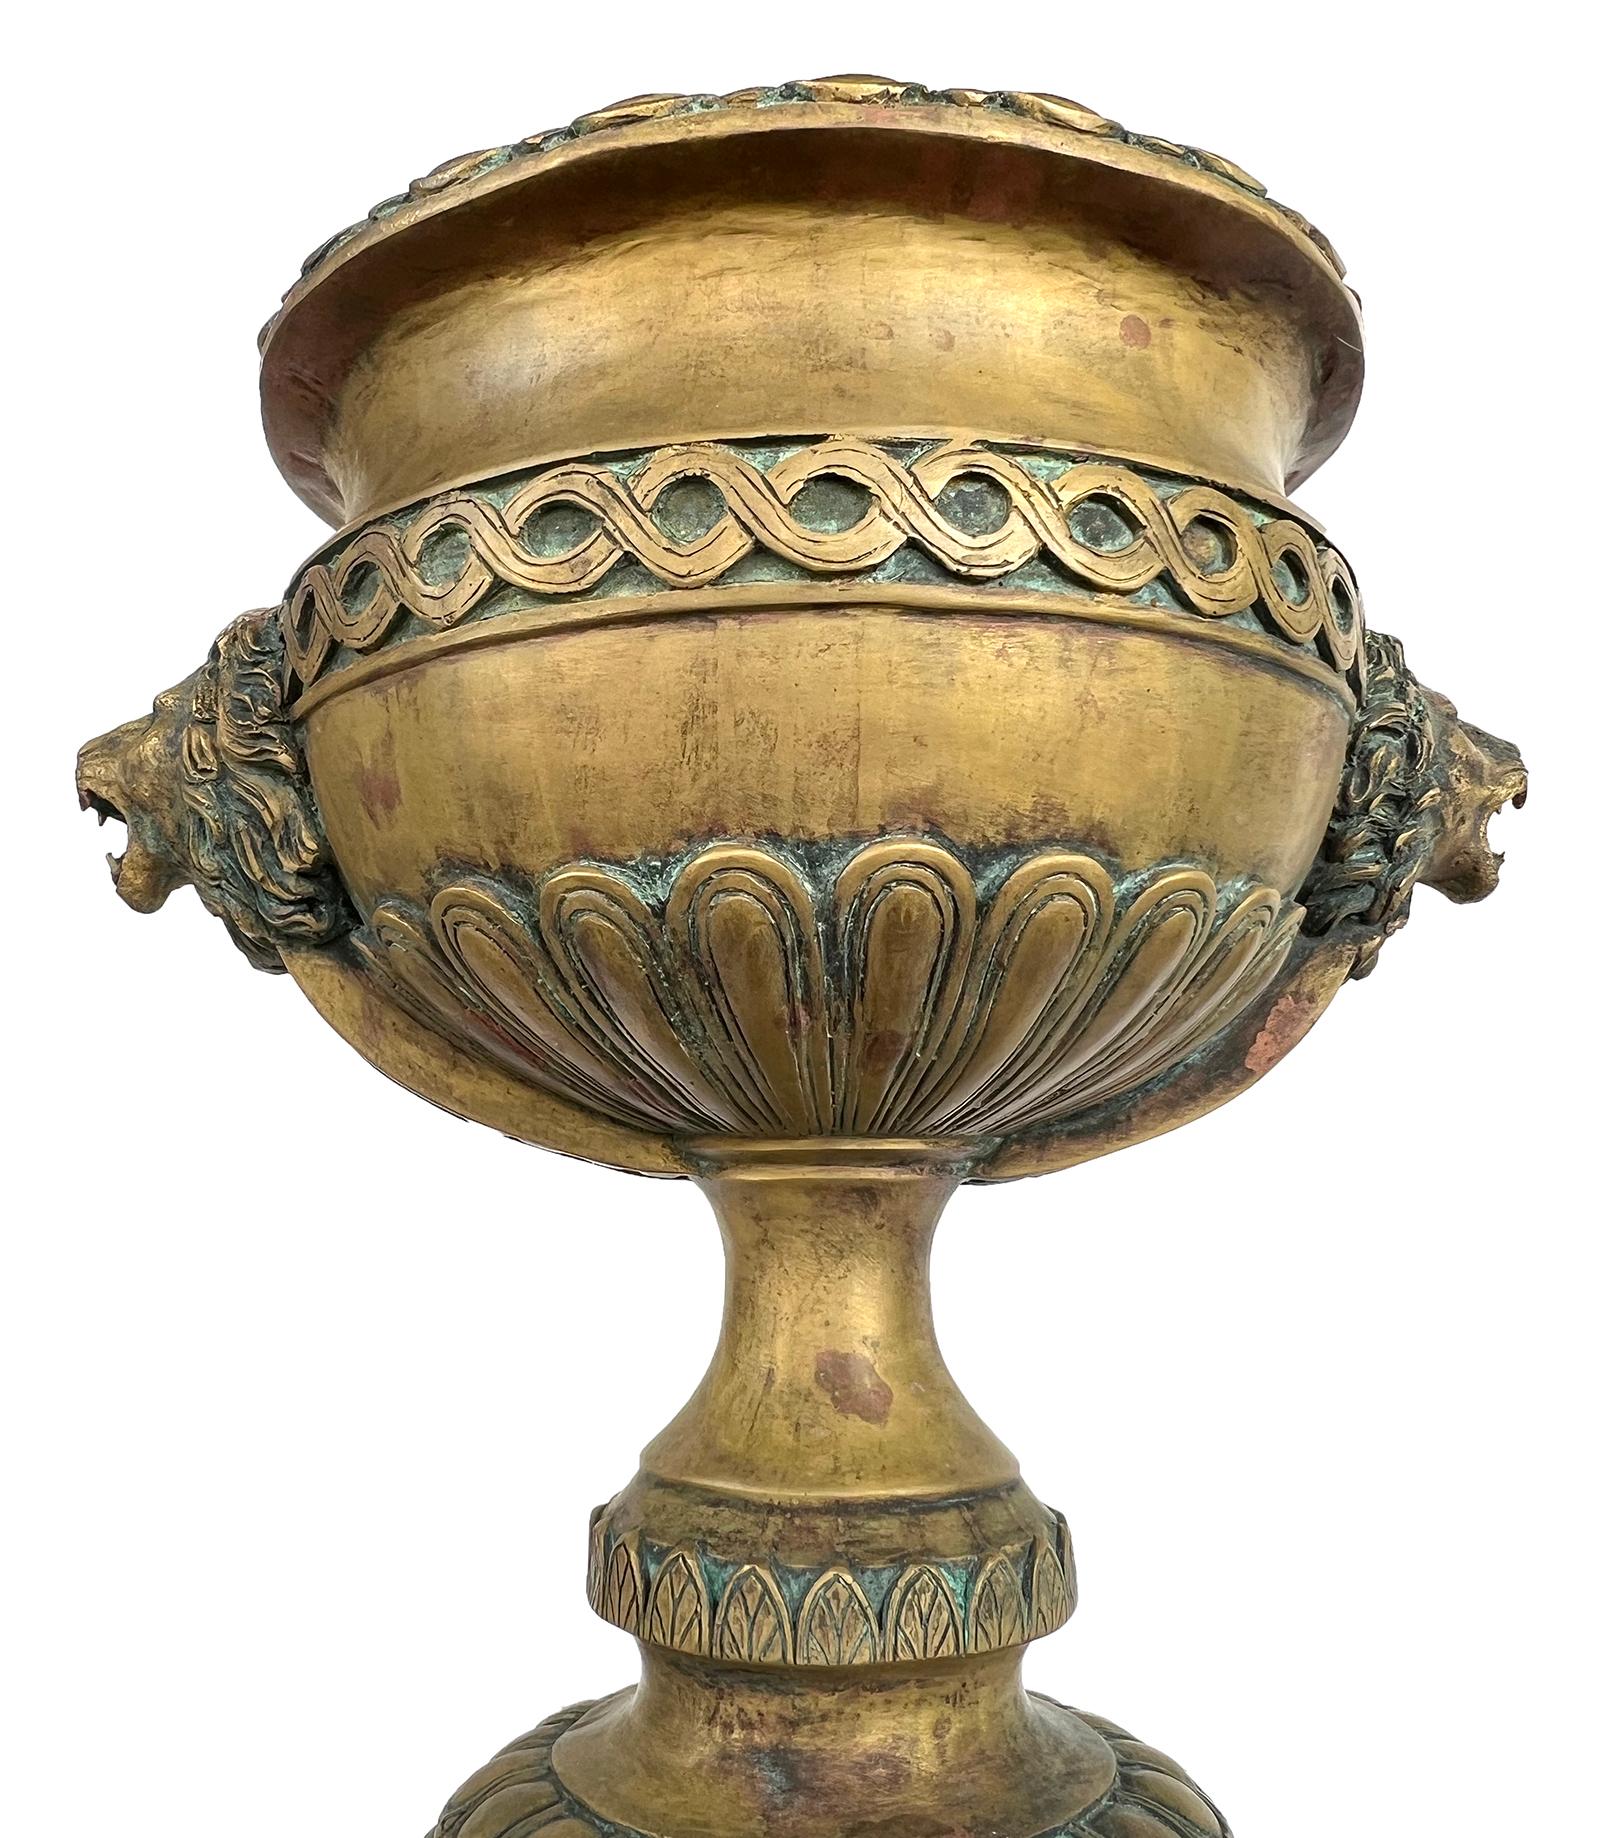 De grande taille et de construction solide, l'urne à pied est flanquée d'anses en forme de tête de lion et moulée avec des bandes guillochées et des bandes en forme d'oves.